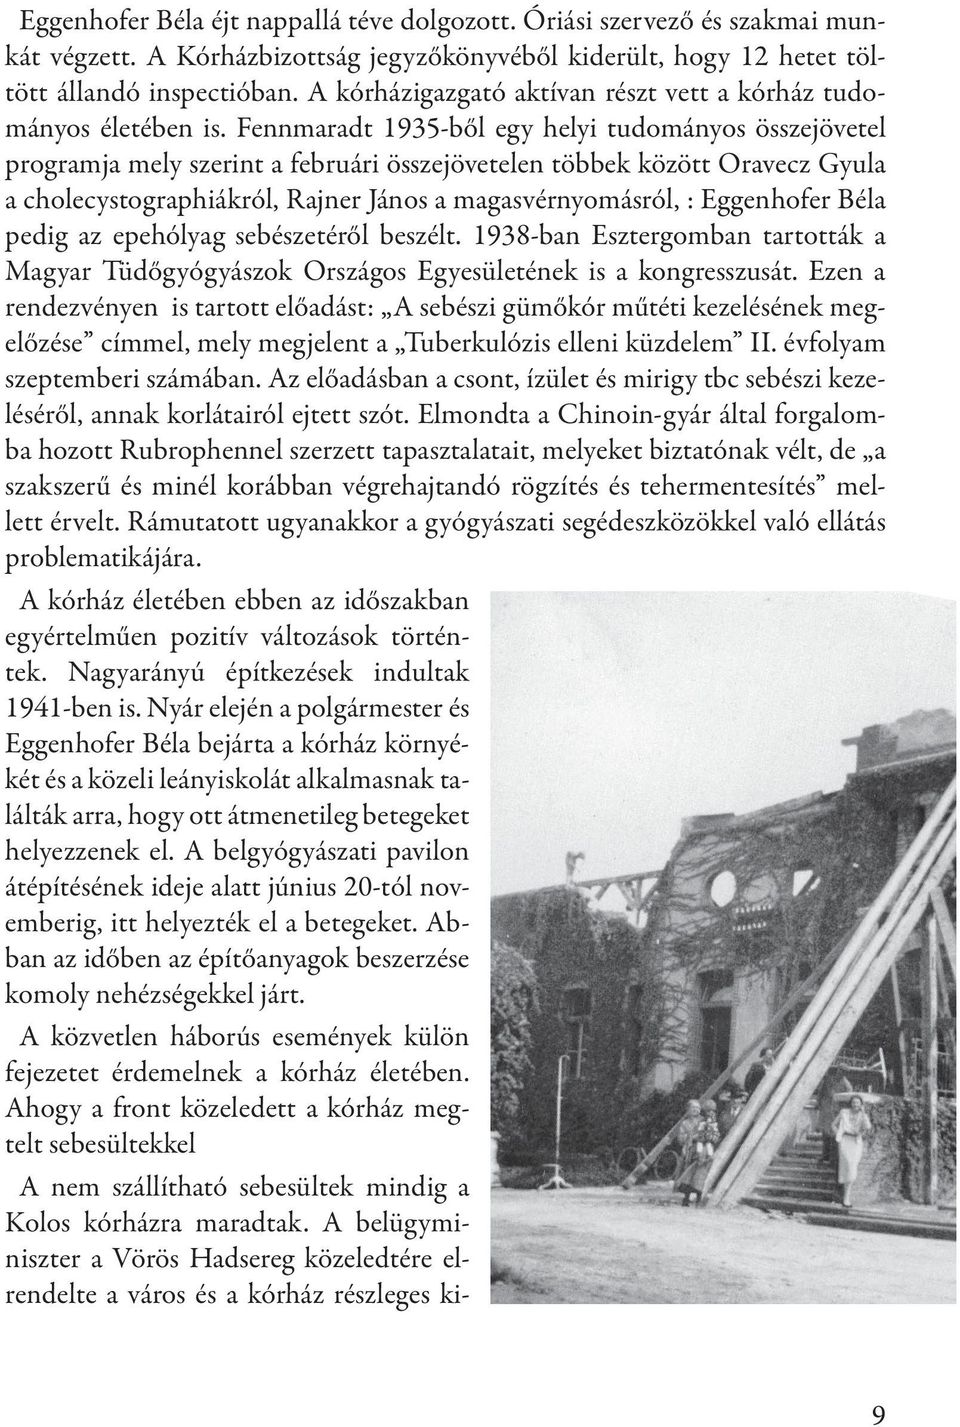 Fennmaradt 1935-ből egy helyi tudományos összejövetel programja mely szerint a februári összejövetelen többek között Oravecz Gyula a cholecystographiákról, Rajner János a magasvérnyomásról, :